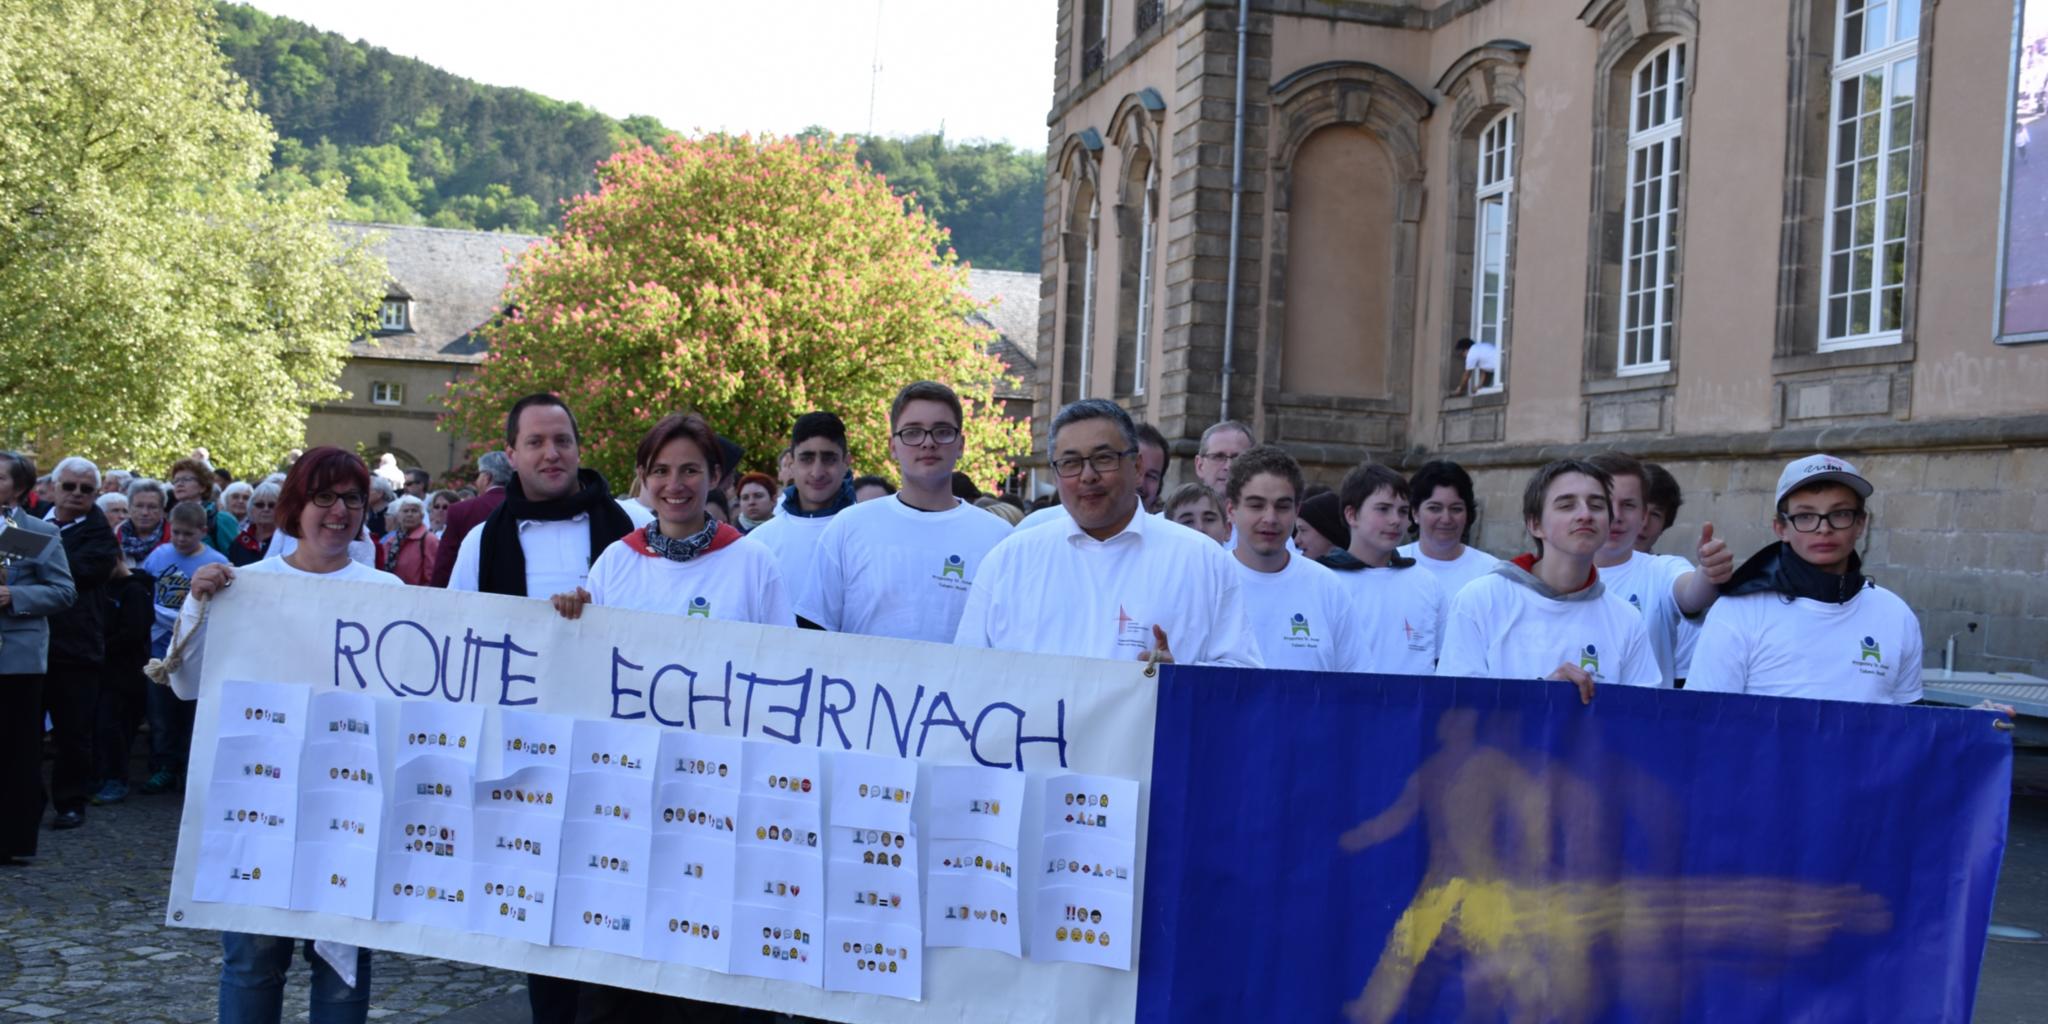 Eine Pilgergruppe der 'Route Echternach' macht sich bereit.